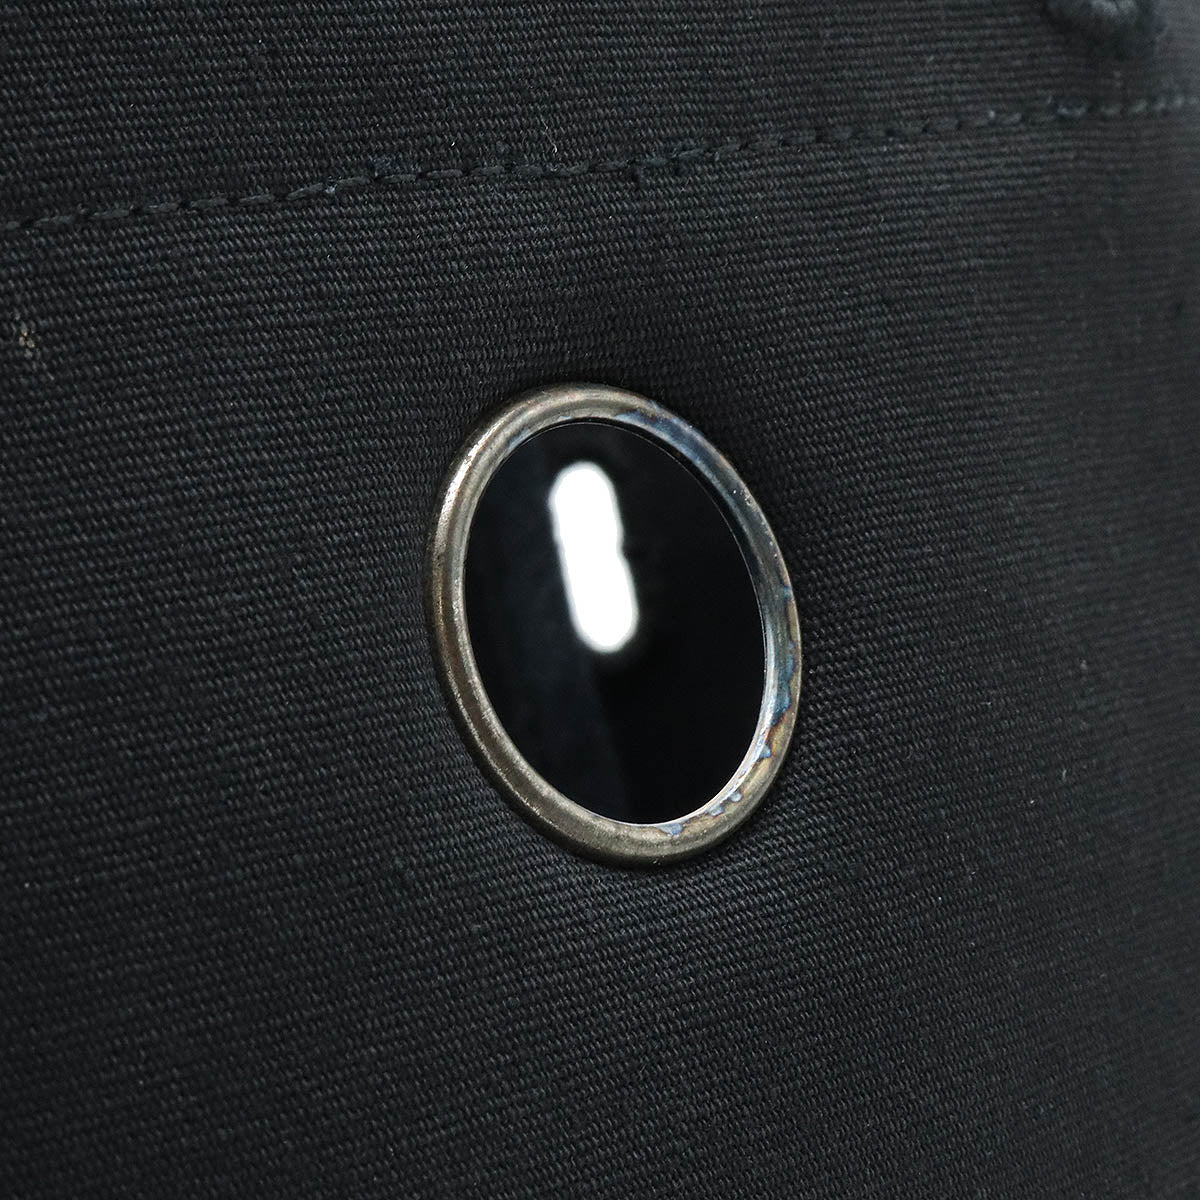 Hermes Elmes Air Bag AdPM Rucksack Backpack 2WAY Handbag Tower Office Leather Black □ O Signage □ Black □ Black □ Black □ Black □ Black □ Black